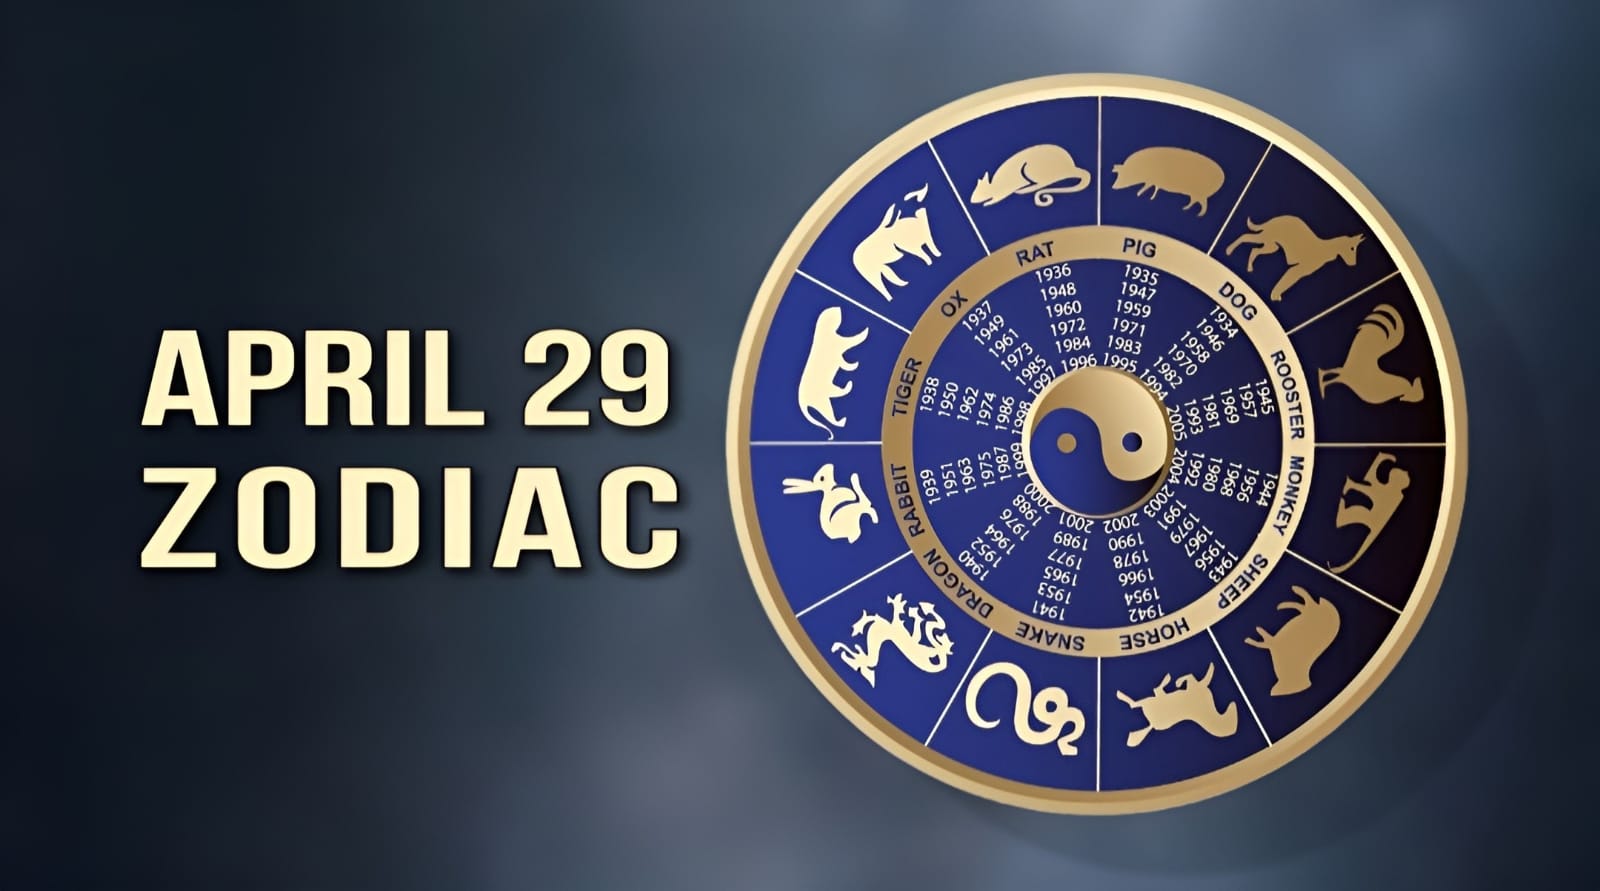 April 29 Zodiac